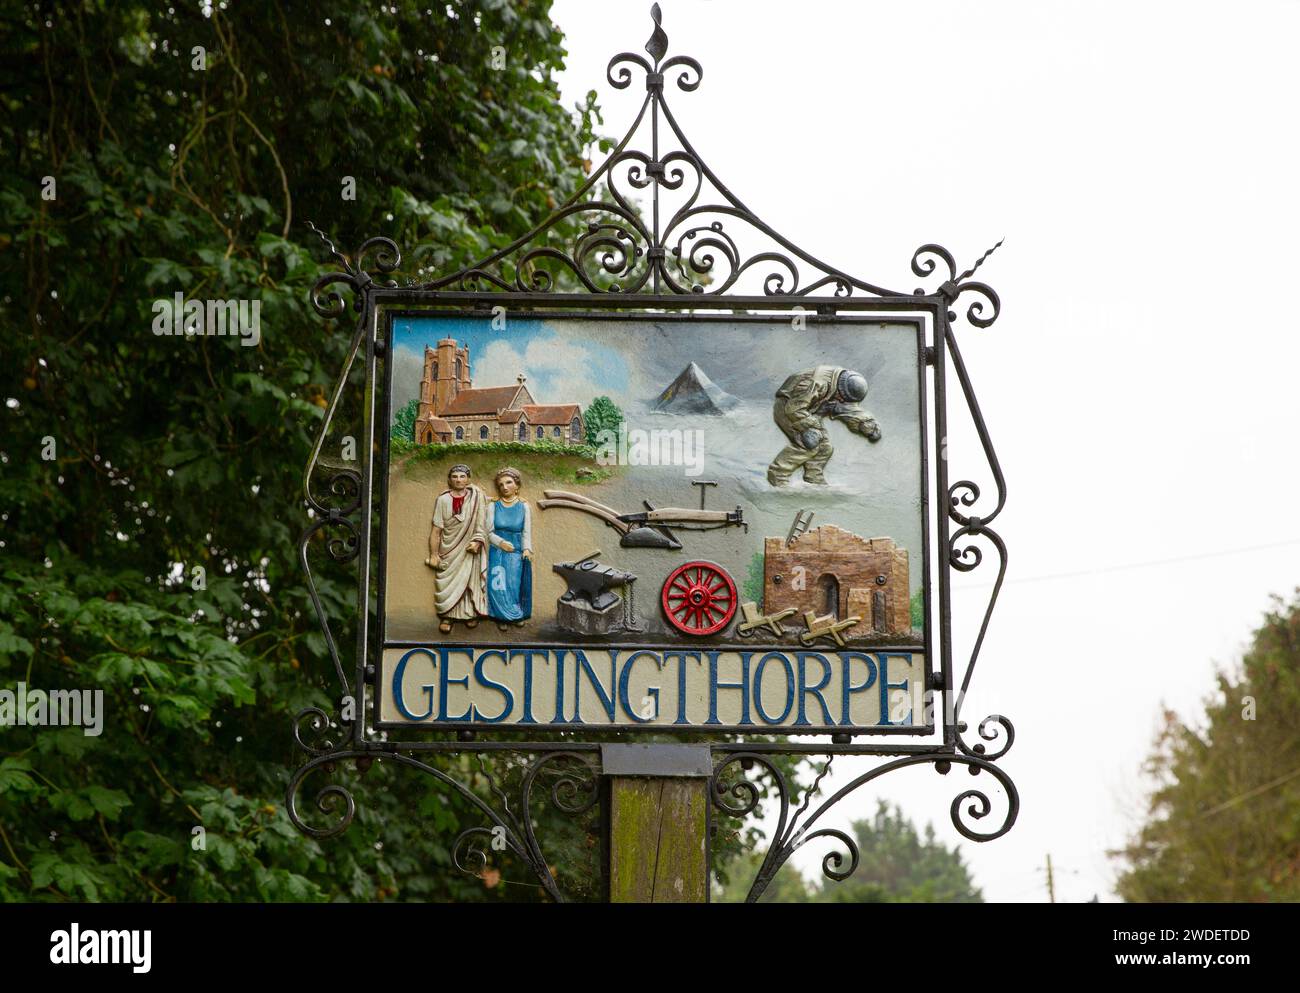 Das Dorfschild in Gestingthorpe, Essex, England. Stockfoto